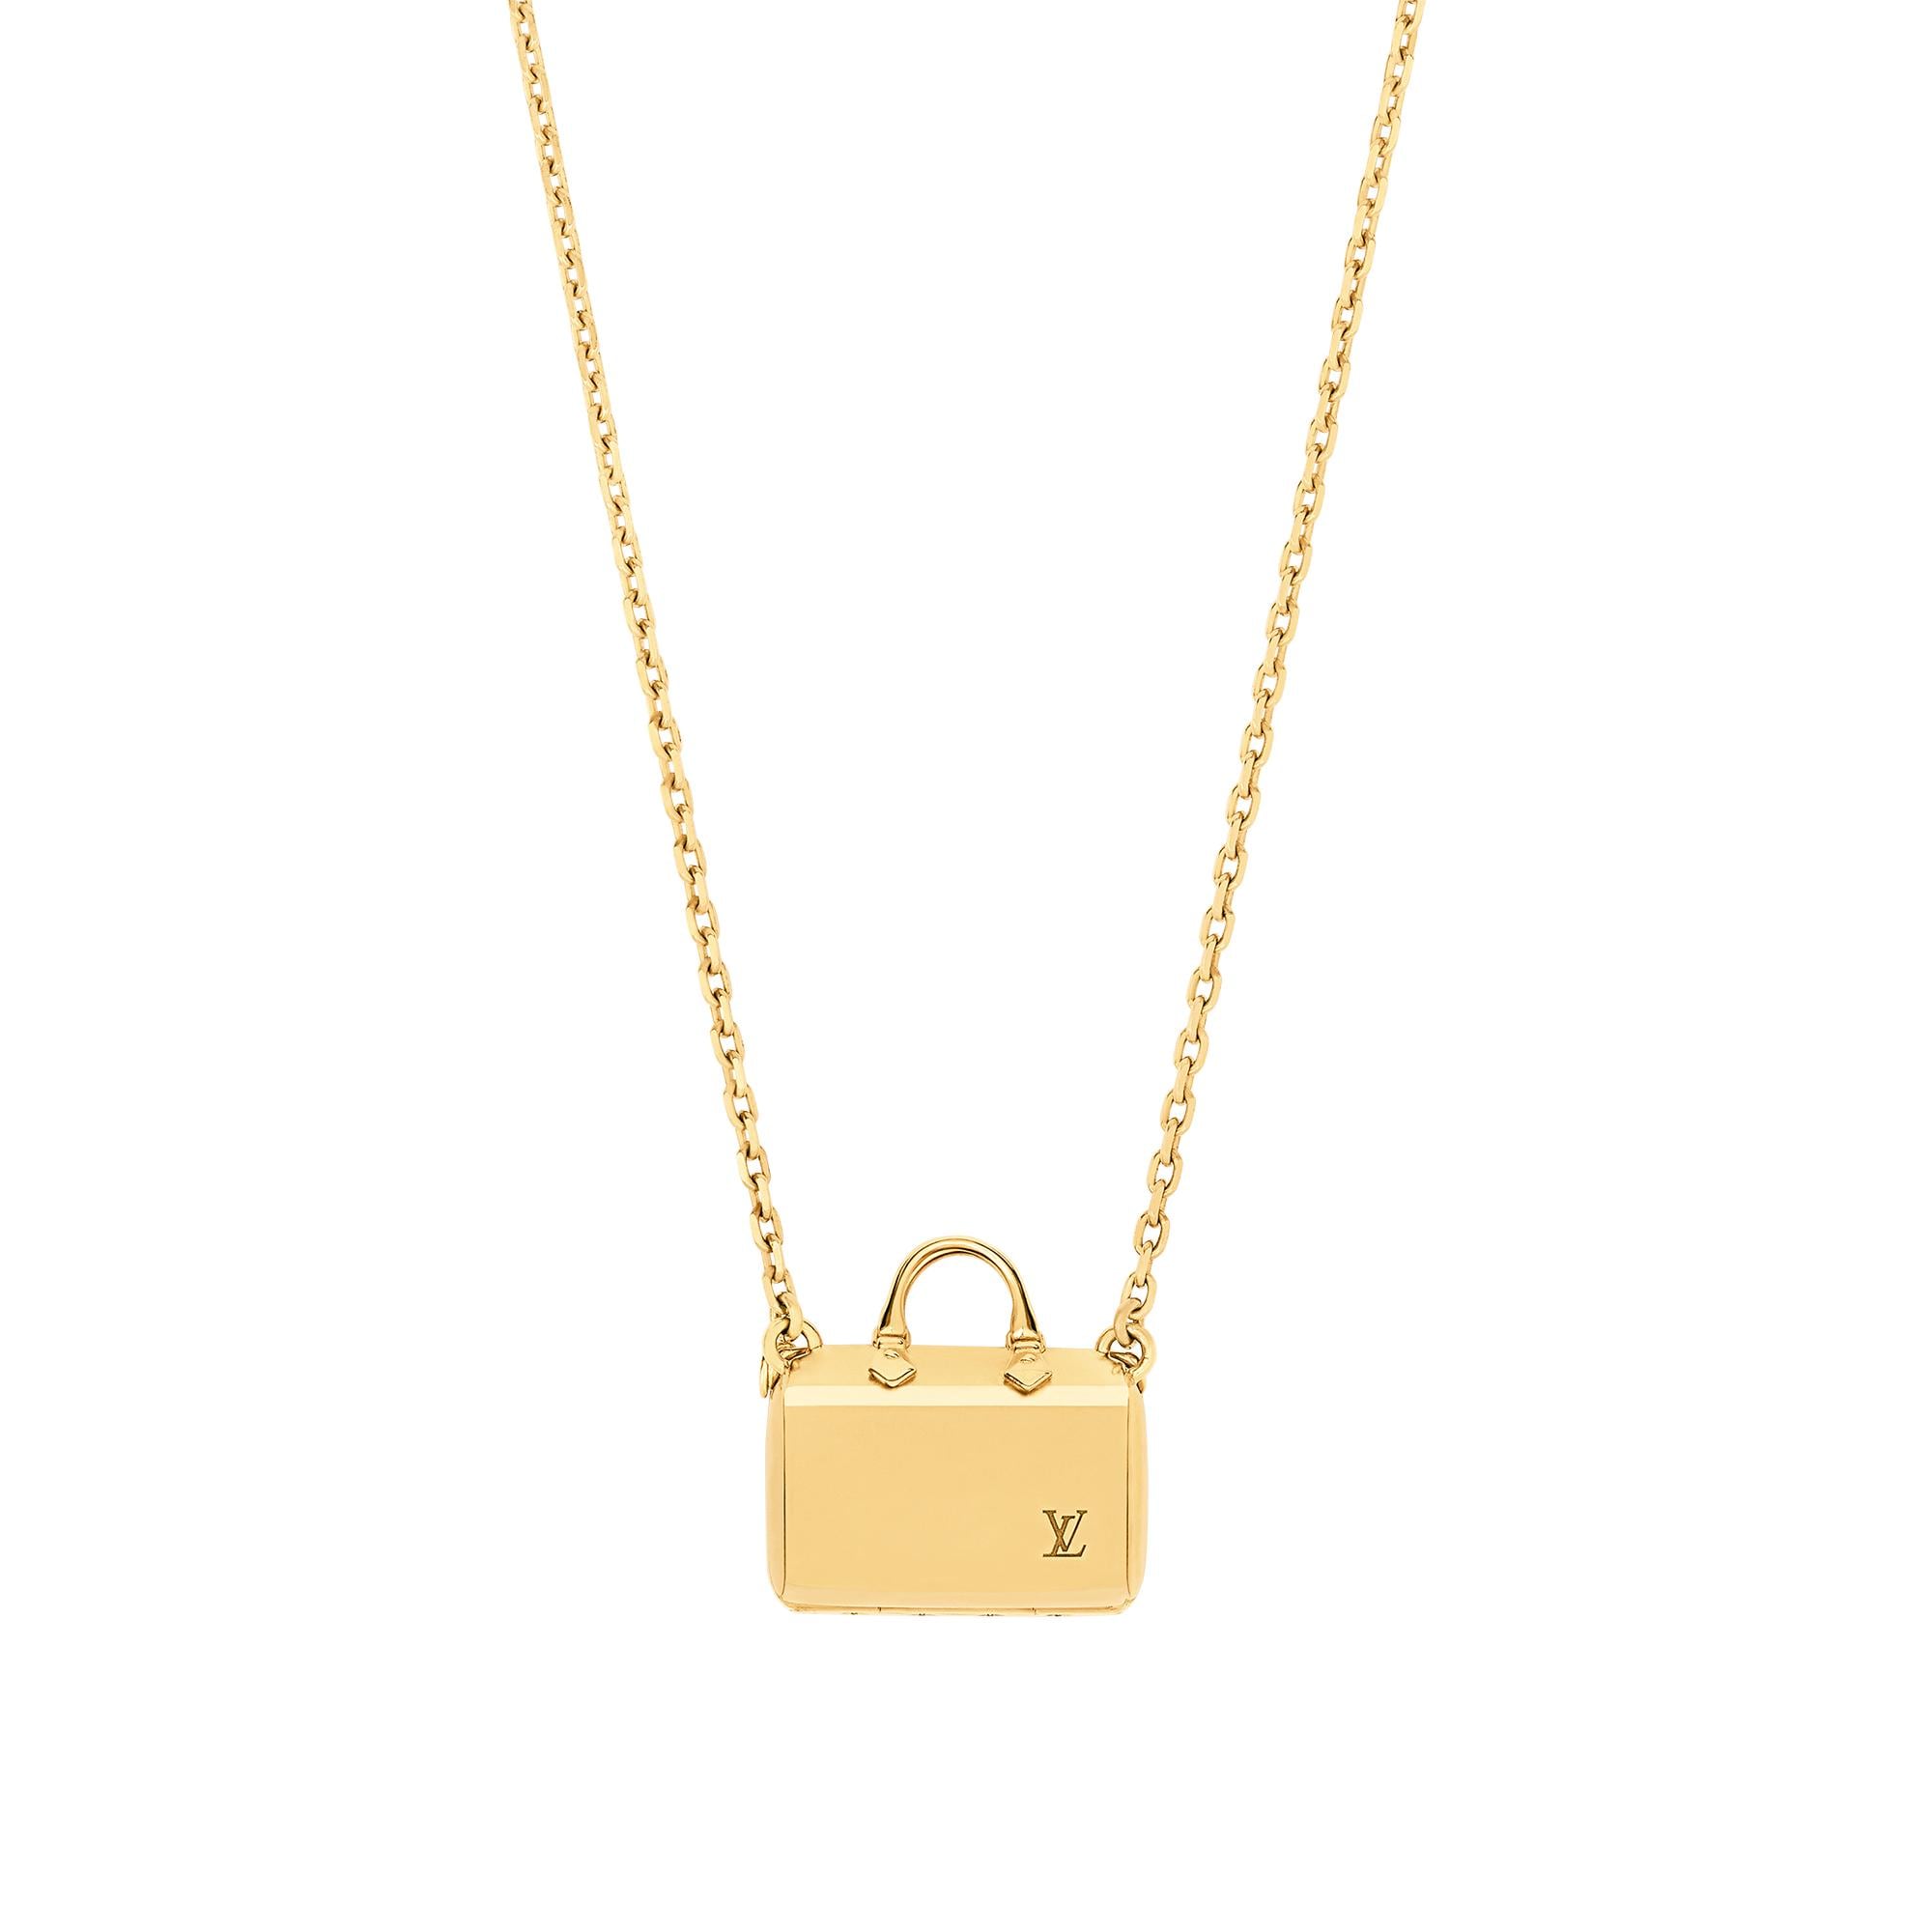 Louis Vuitton Speedy Nanogram Necklace in Gold - Accessories M00367